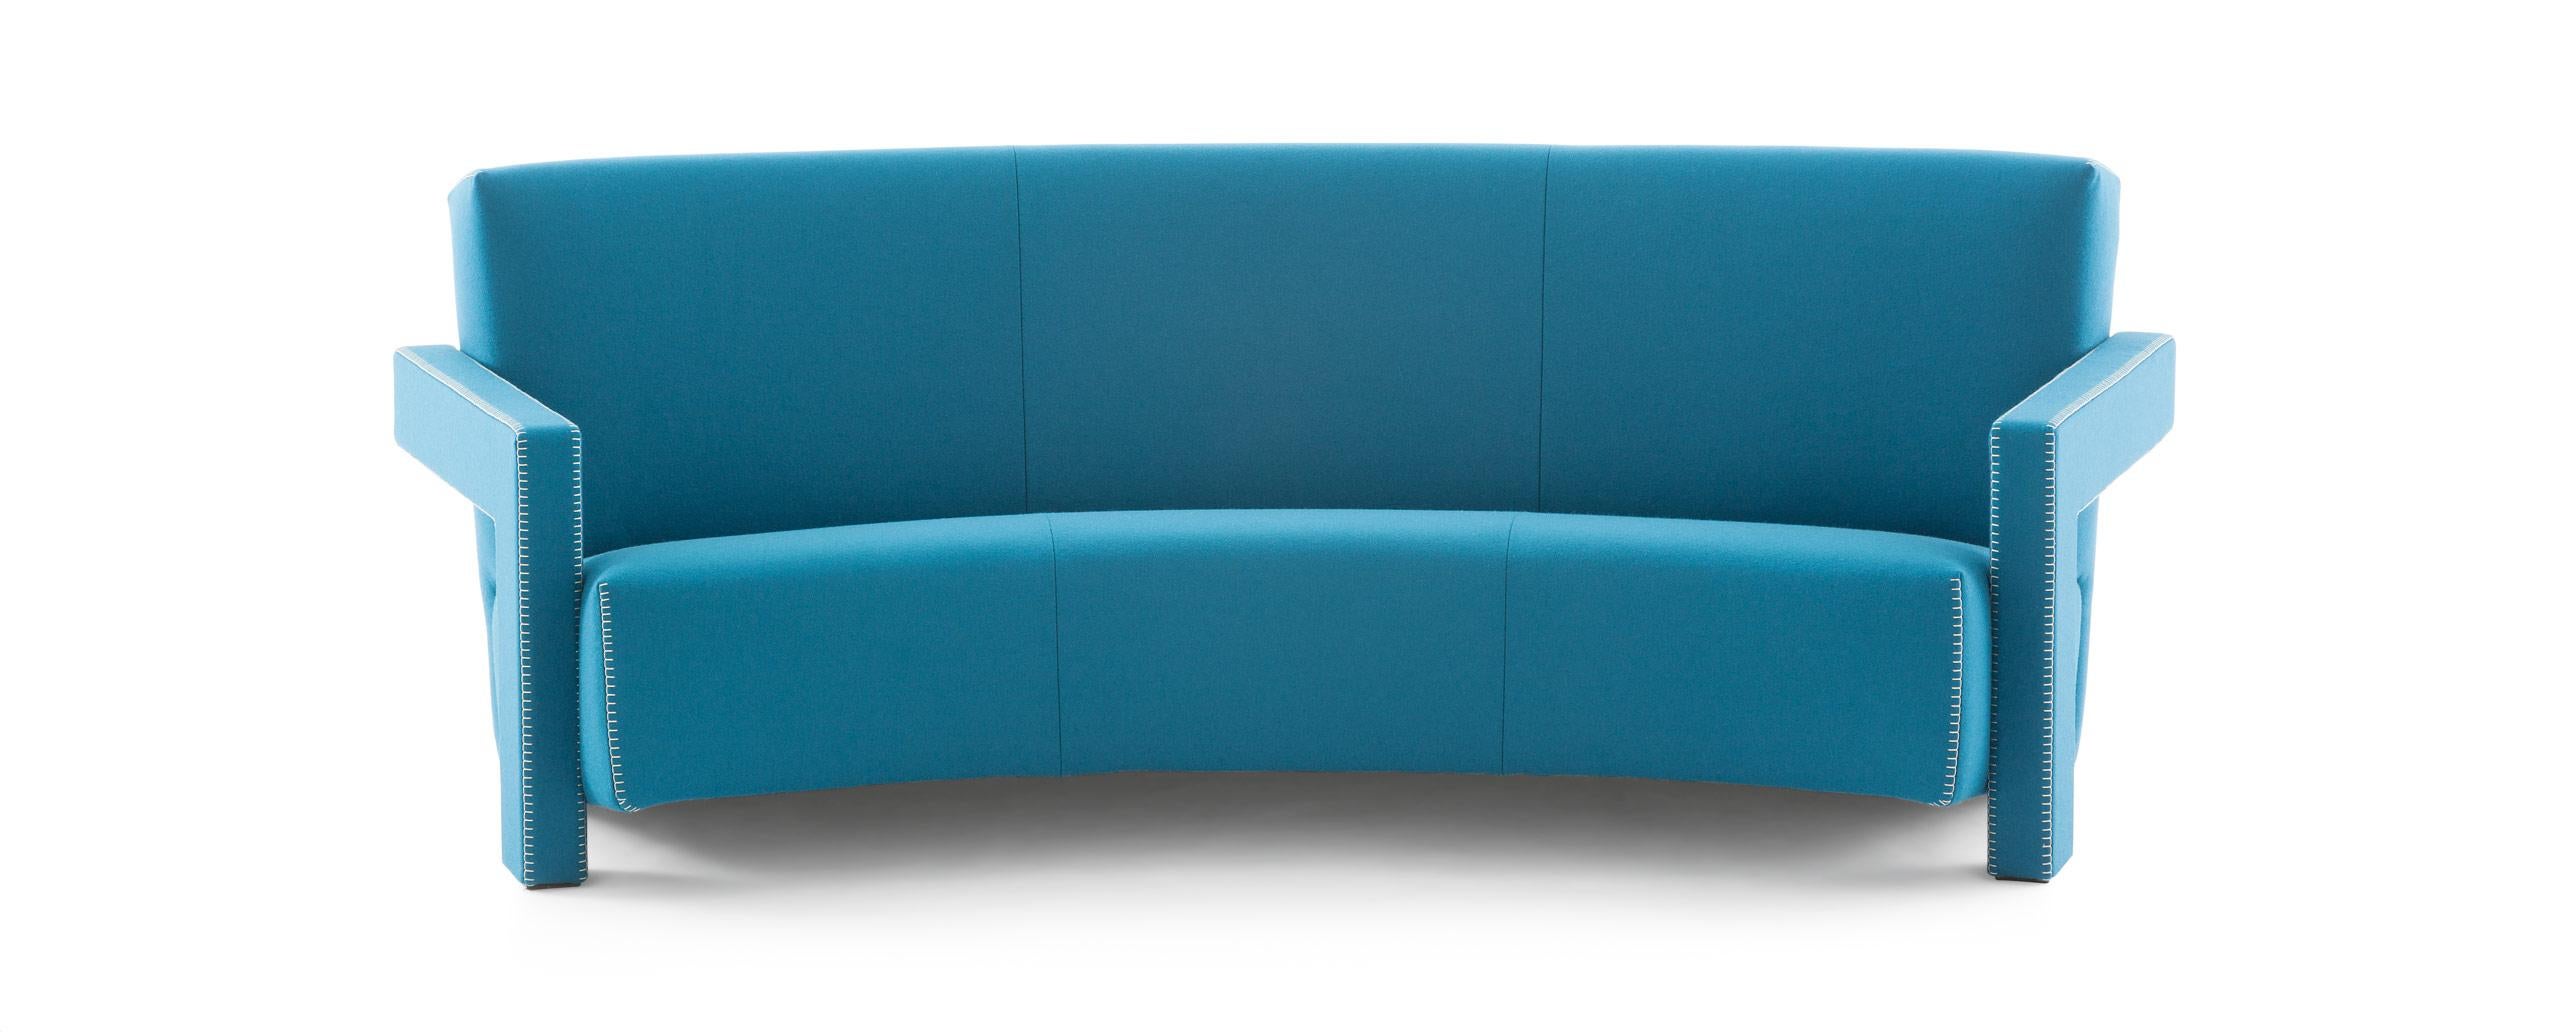 Sofa, entworfen von Gerrit Thomas Rietveld im Jahr 1935. Wiedereinführung 1988.
Hergestellt von Cassina in Italien.

Gerrit Rietveld entwickelte den Entwurf für den Utrecht-Sessel 1935, als er für das Kaufhaus Metz & Co. in Amsterdam arbeitete, wo